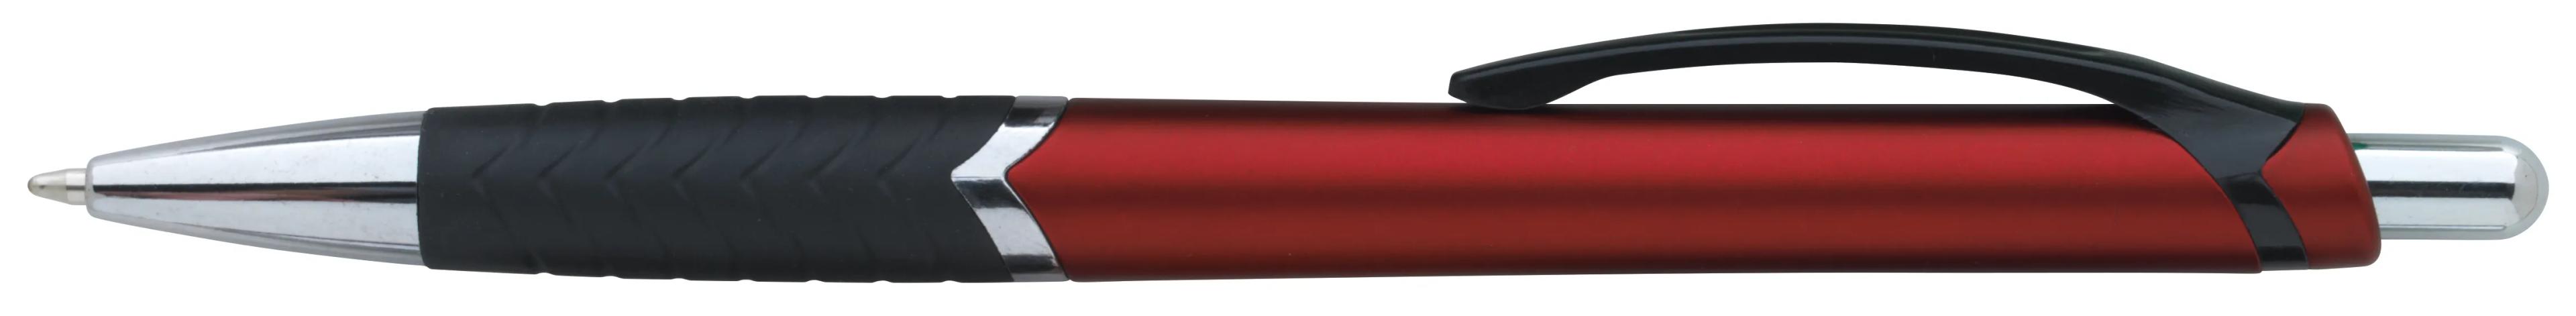 Arrow Metallic Pen 13 of 43